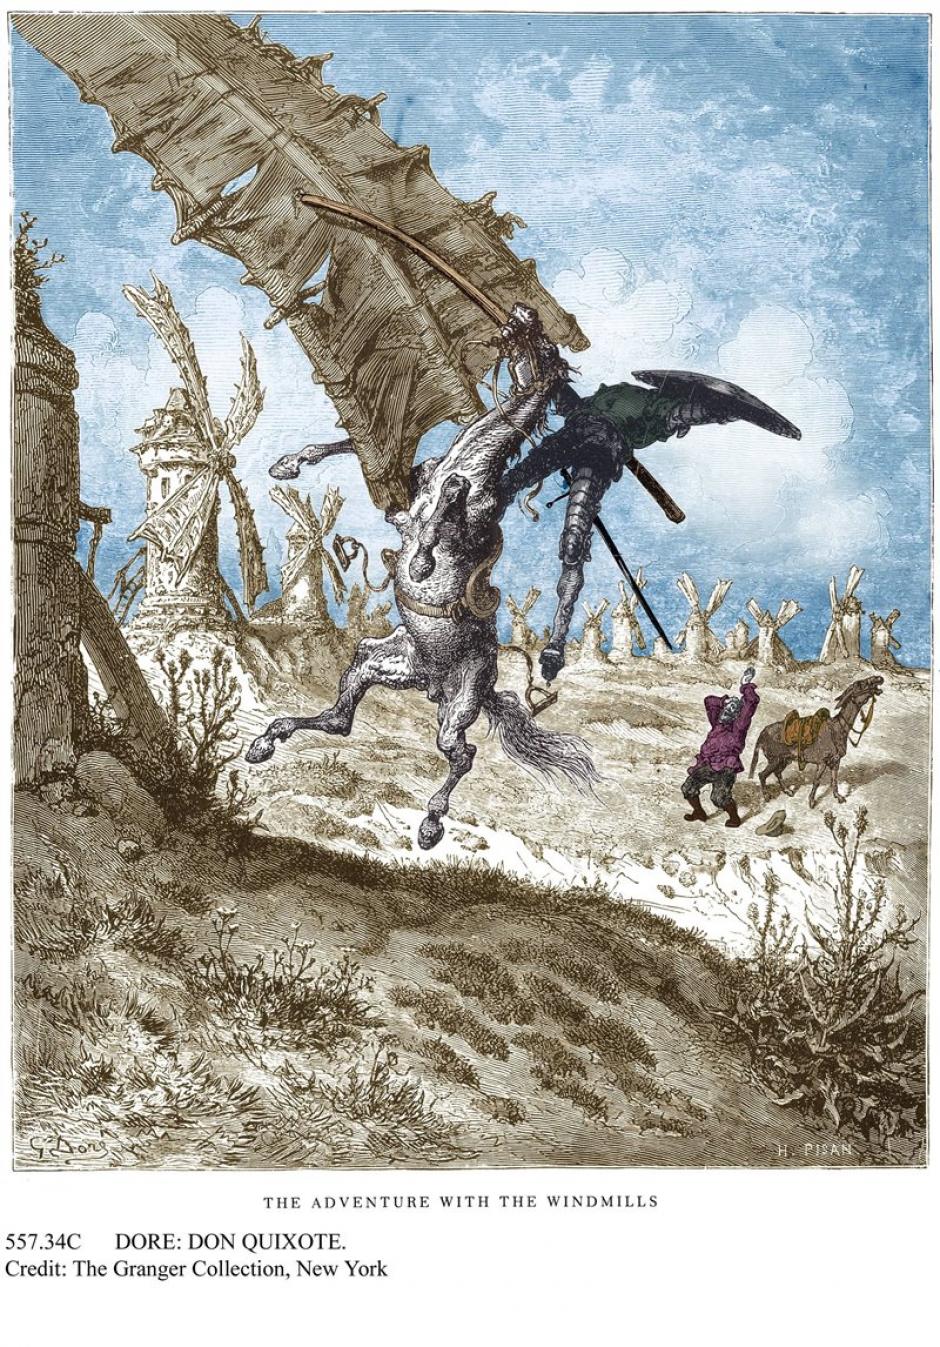 Don Quijote lucha contra un molino de viento pensando que es un gigante. Grabado coloreado basado en uno de Gustave Doré